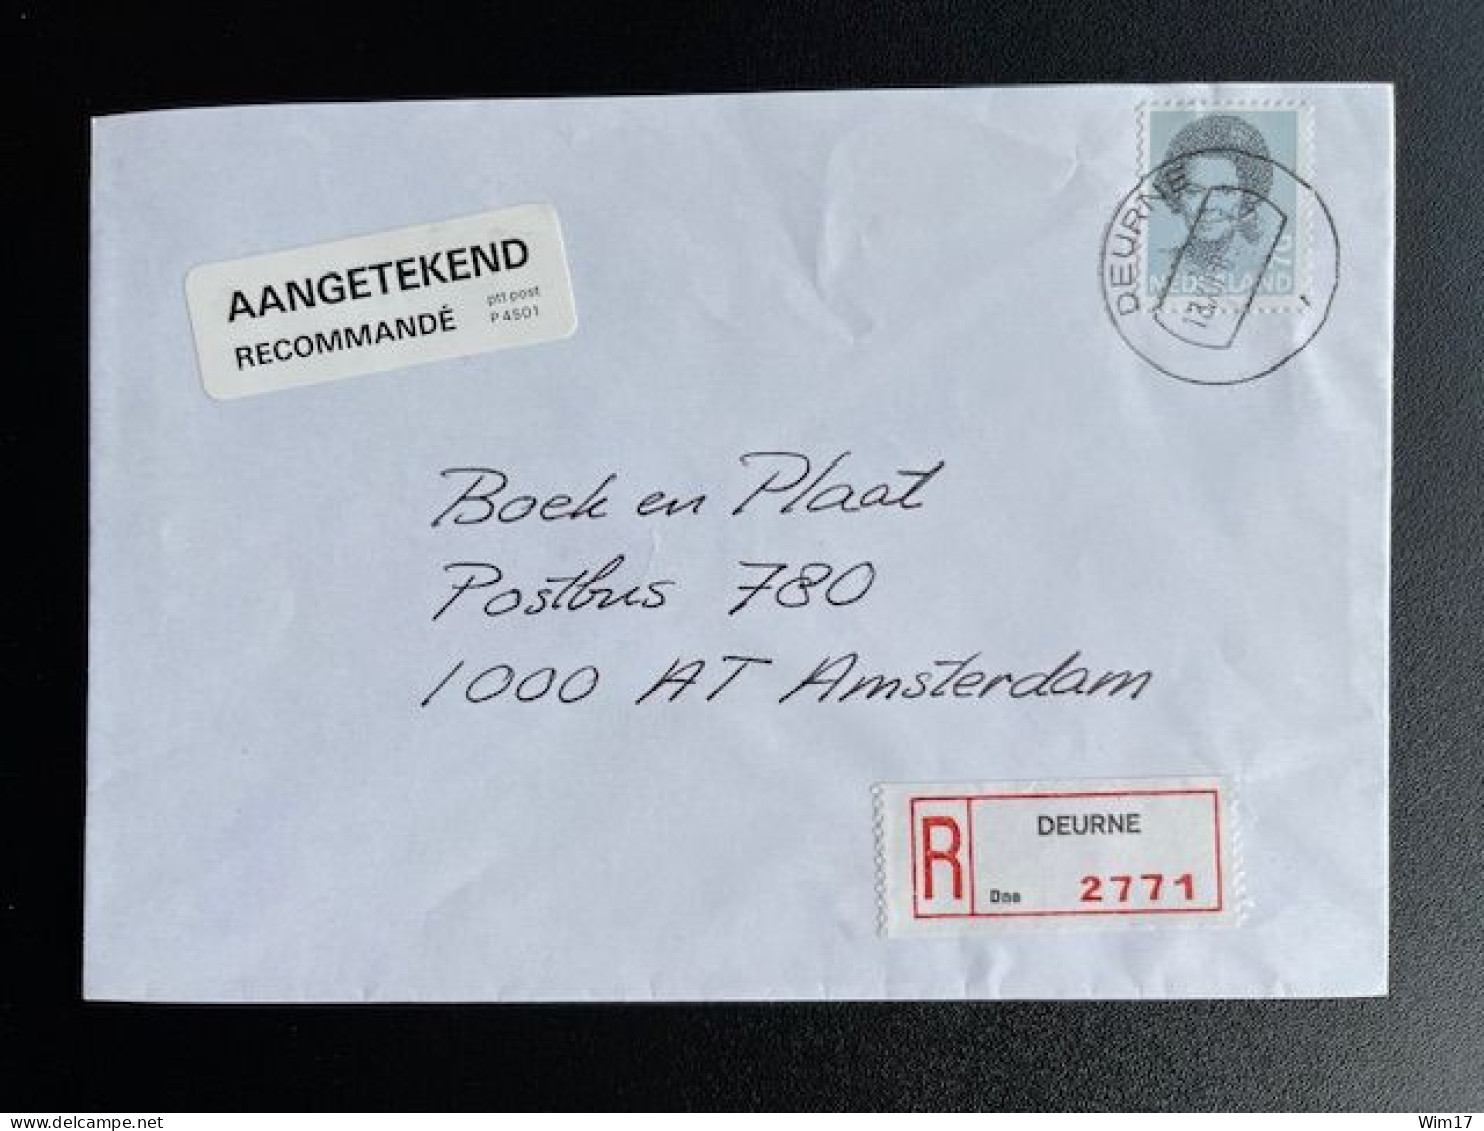 NETHERLANDS 1989 REGISTERED LETTER DEURNE TO AMSTERDAM 18-12-1989 NEDERLAND AANGETEKEND - Covers & Documents